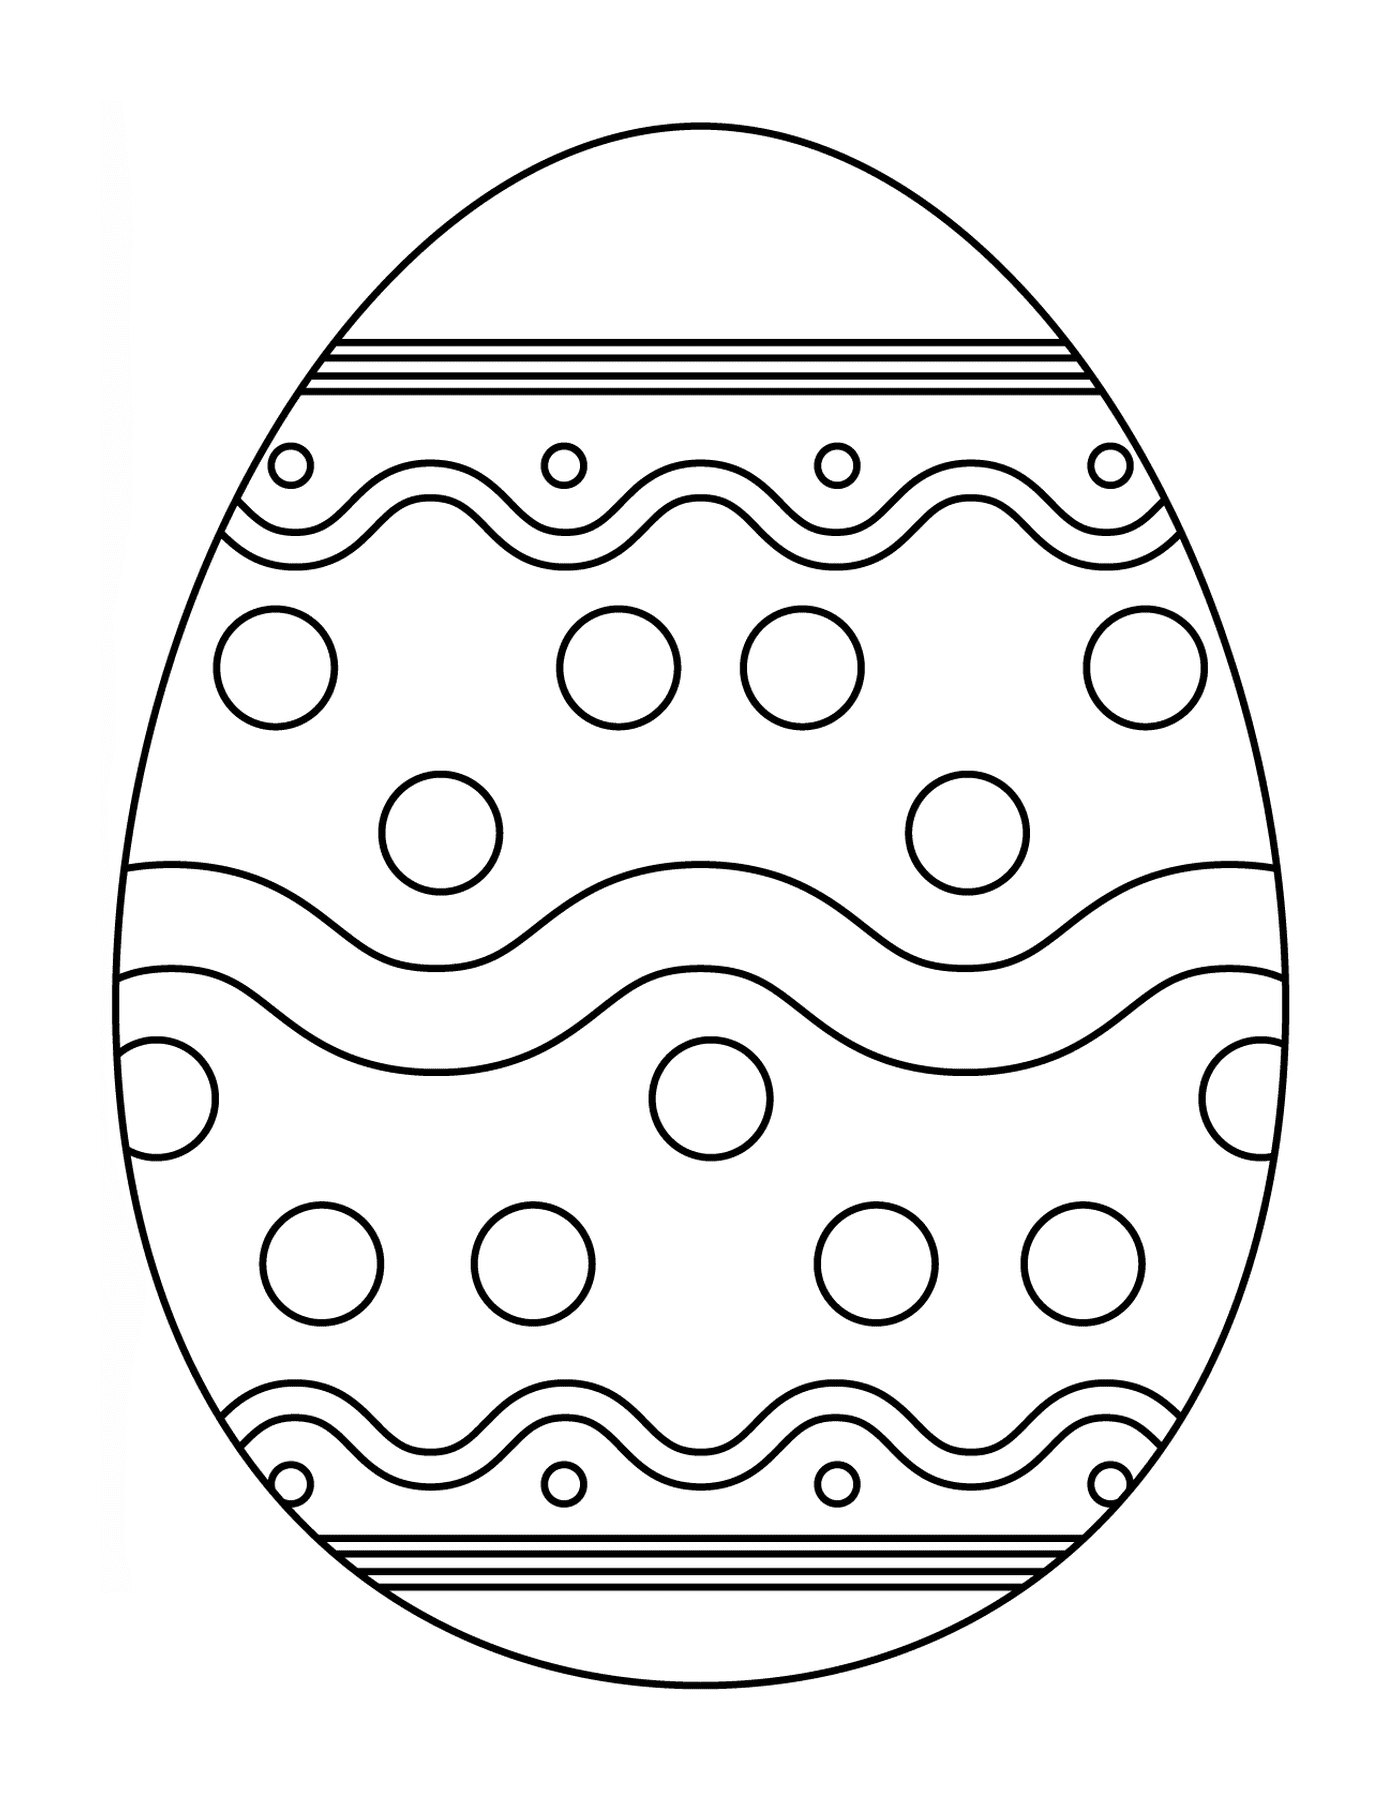  Пасхальное яйцо с абстрактным рисунком 4 